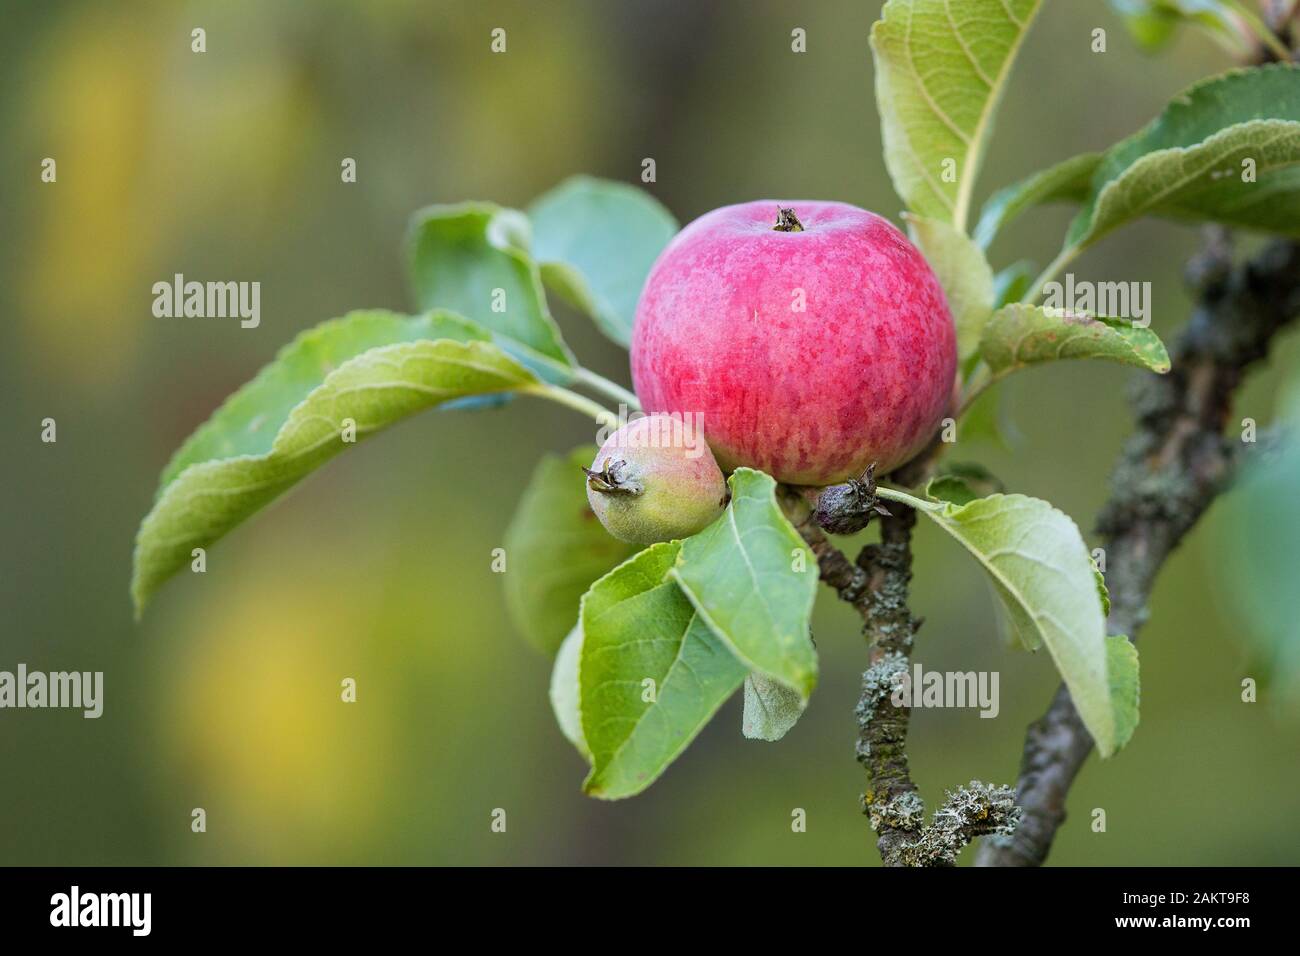 Roter apfel (Malus domestica) hängt am apfelbaum Brandeburg, Deutschland Stockfoto